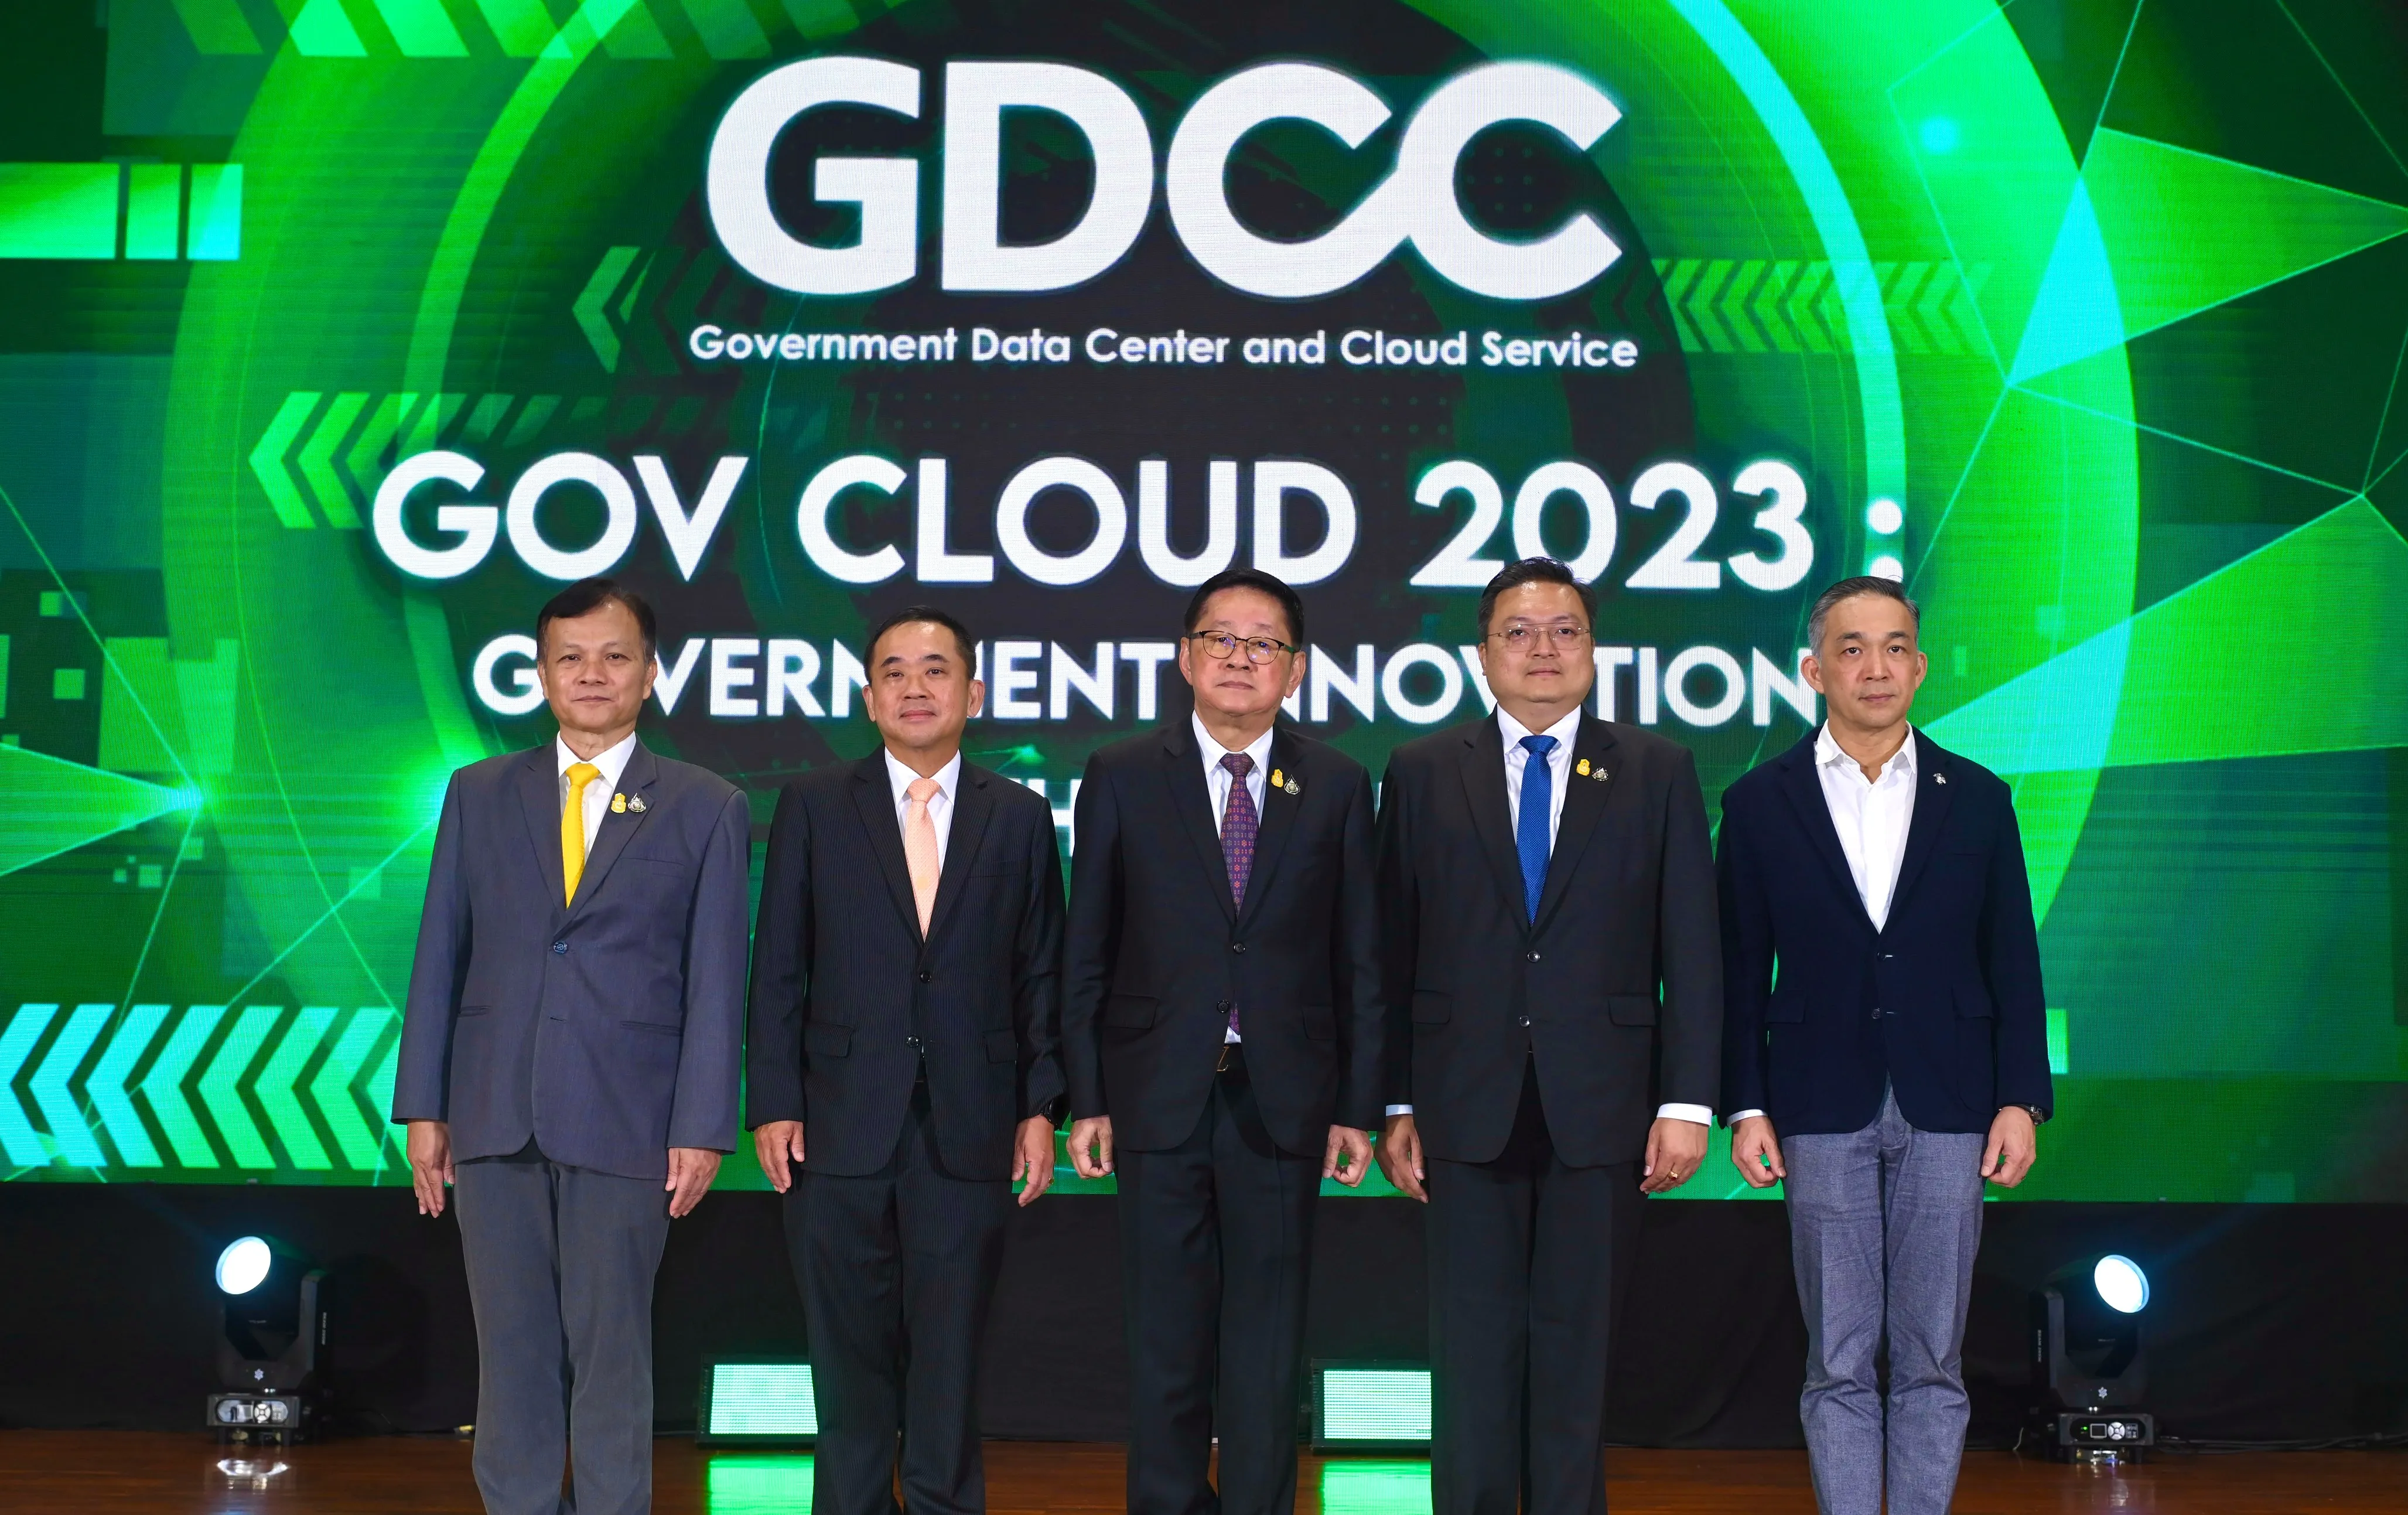 ดีอีเอส ชูนโยบาย Cloud First ต่อยอดคลาวด์กลาง GDCC   เล็งผนึก สดช., NT ร่วมขยายโครงสร้างพื้นฐานดิจิทัลยกระดับศักยภาพภาครัฐพัฒนาประเทศ